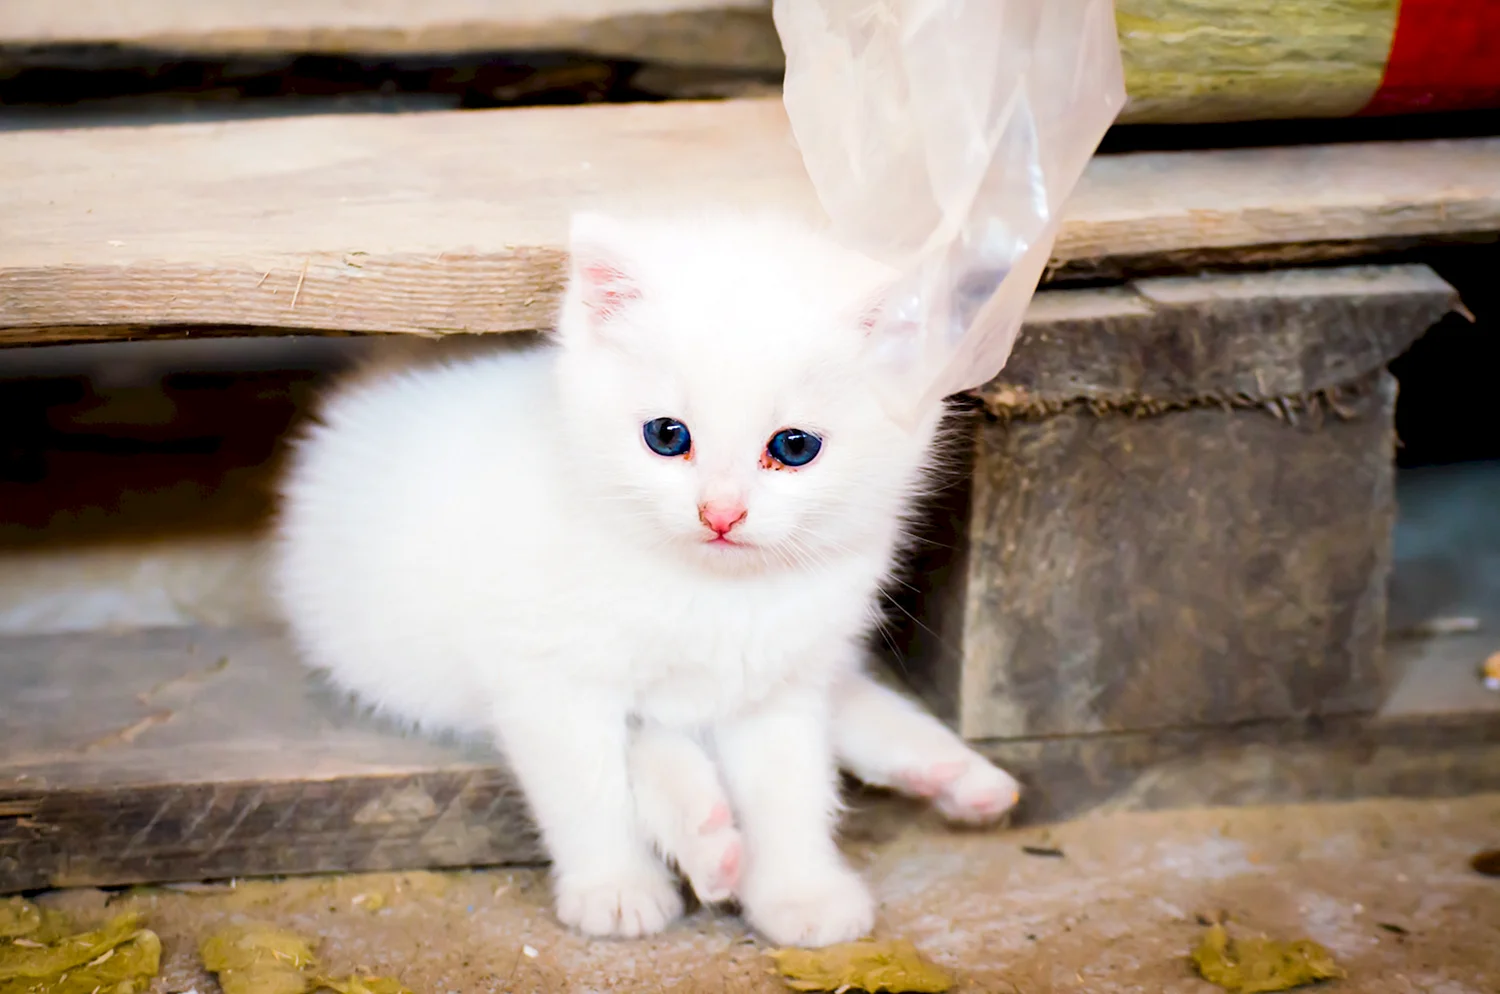 Милый белый котенок